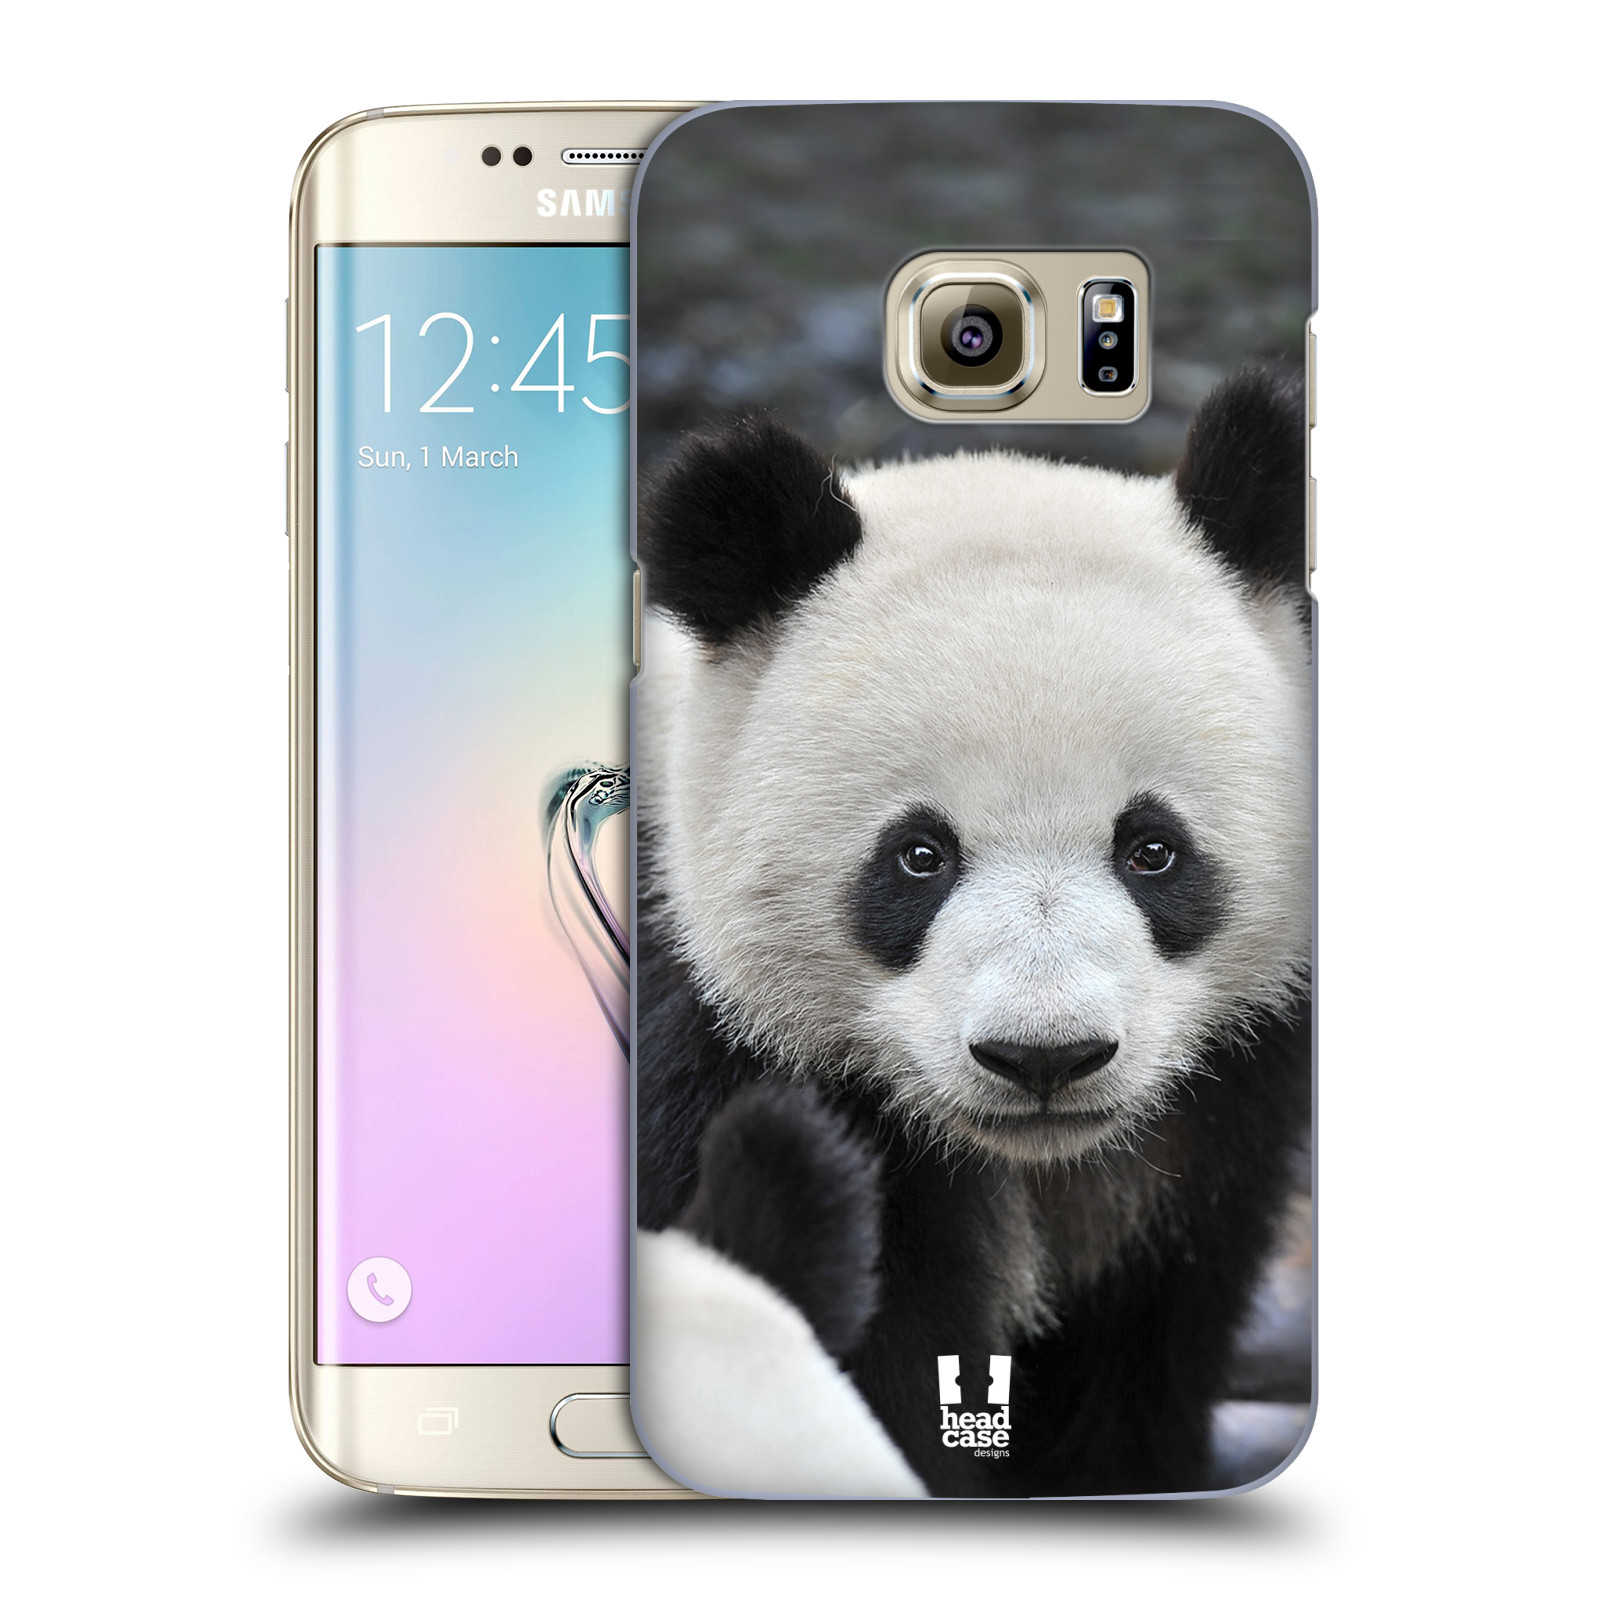 Zadní obal pro mobil Samsung Galaxy S7 EDGE - HEAD CASE - Svět zvířat medvěd panda